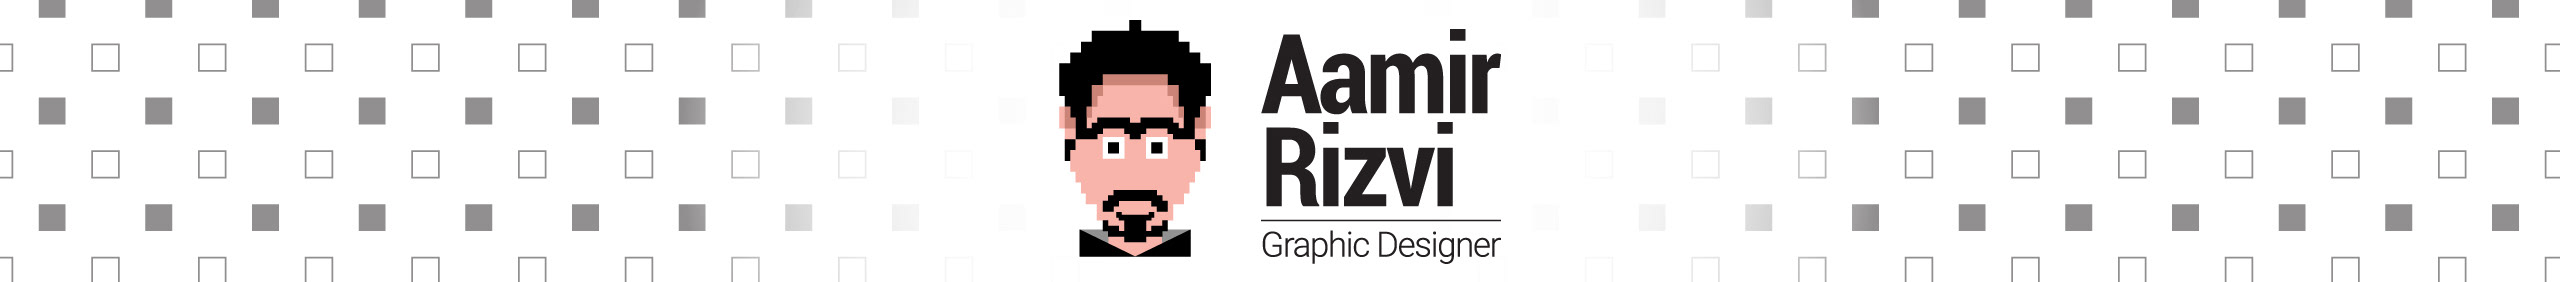 Banner de perfil de Aamir Rizvi